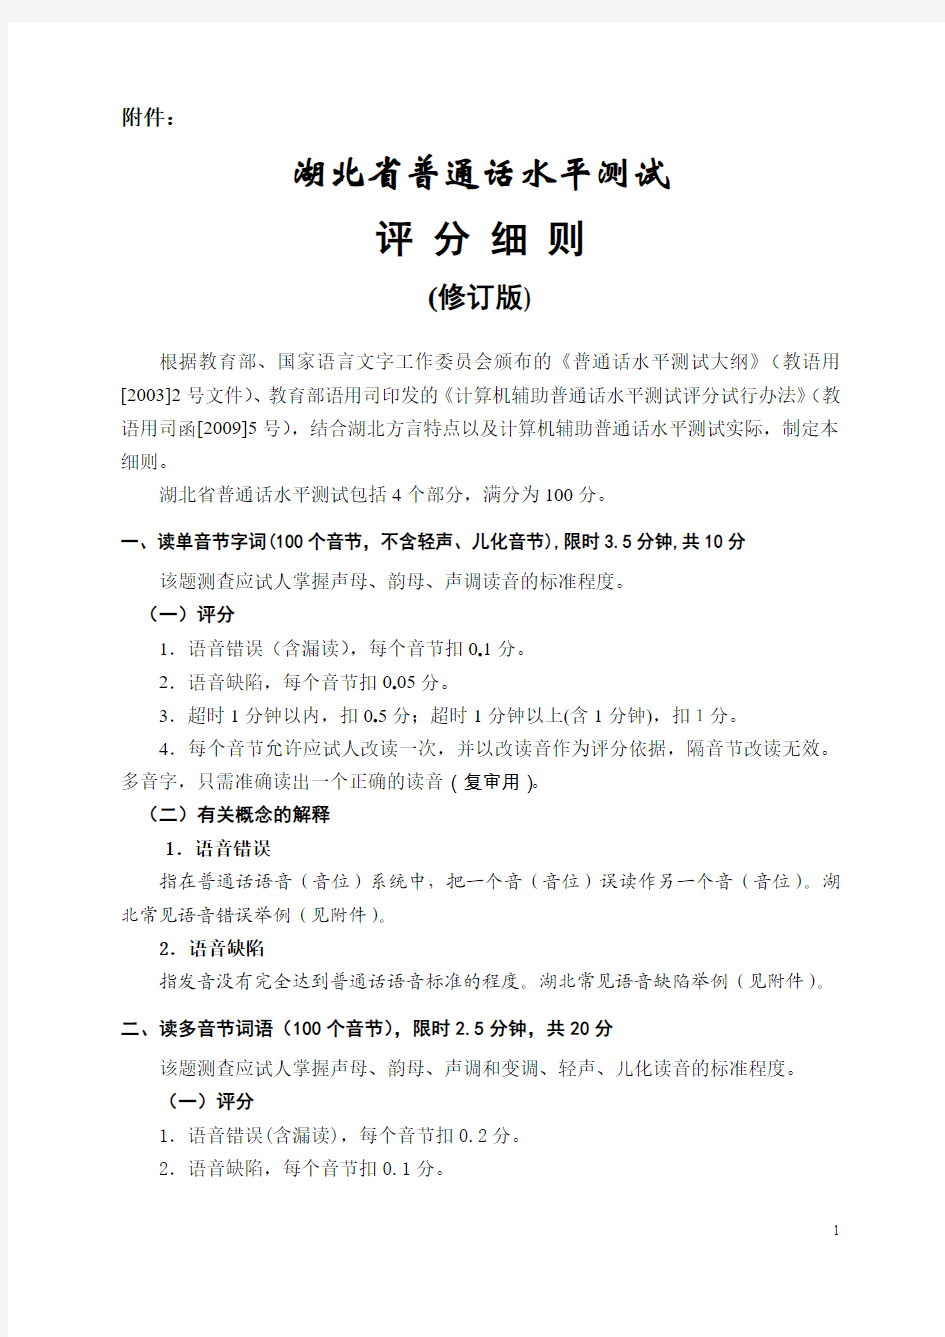 《湖北省普通话水平测试评分细则》(2015修订版)